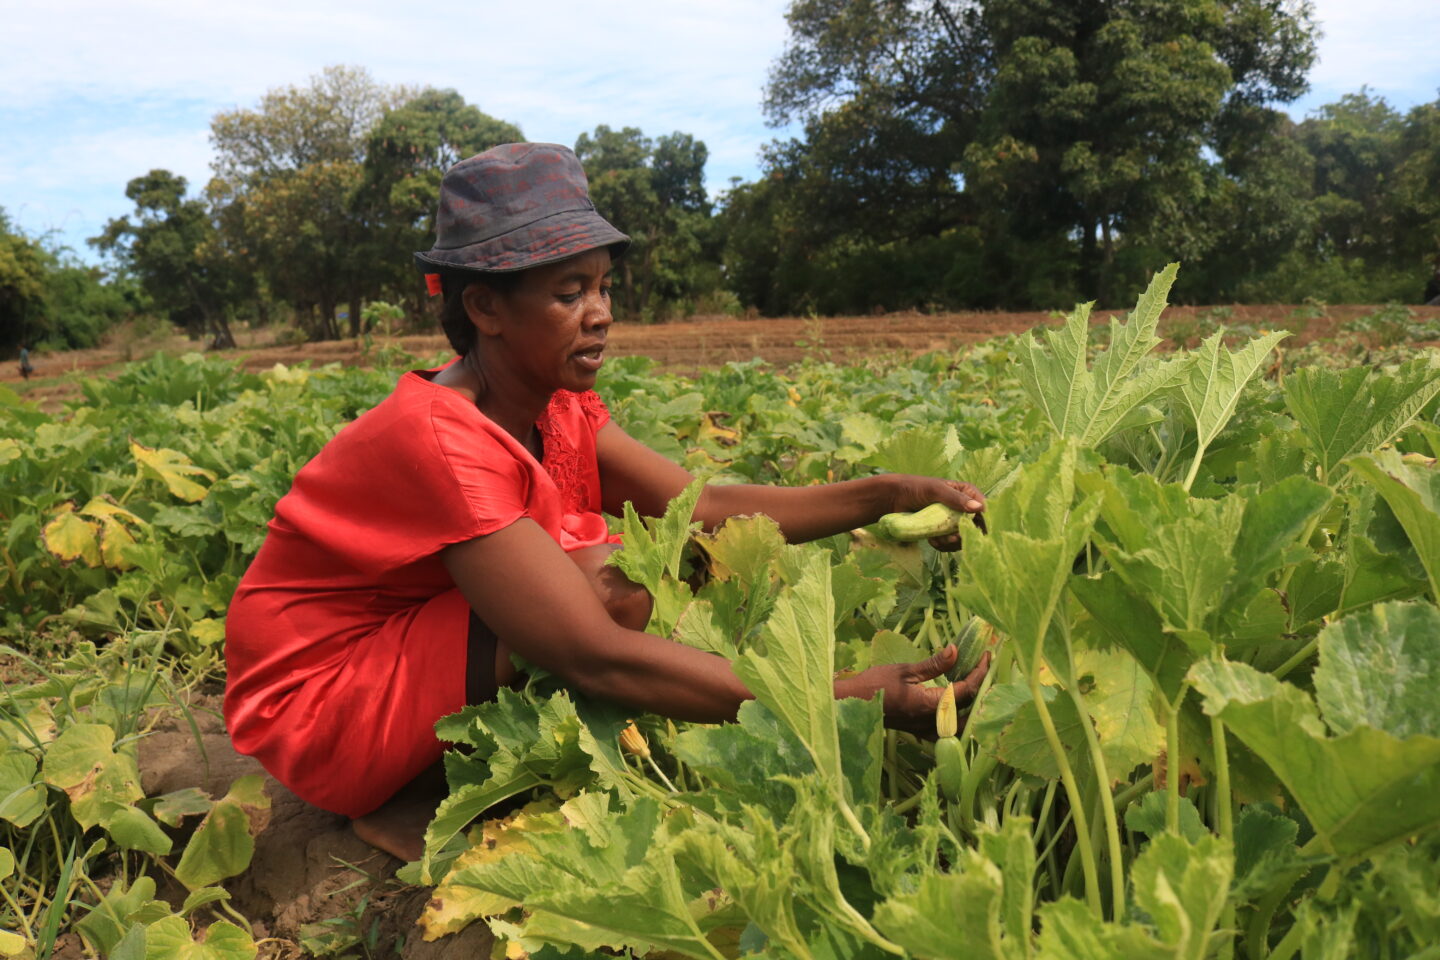 Une agricultrice soutenue par l'ONG CARE face aux impacts du réchauffement climatique